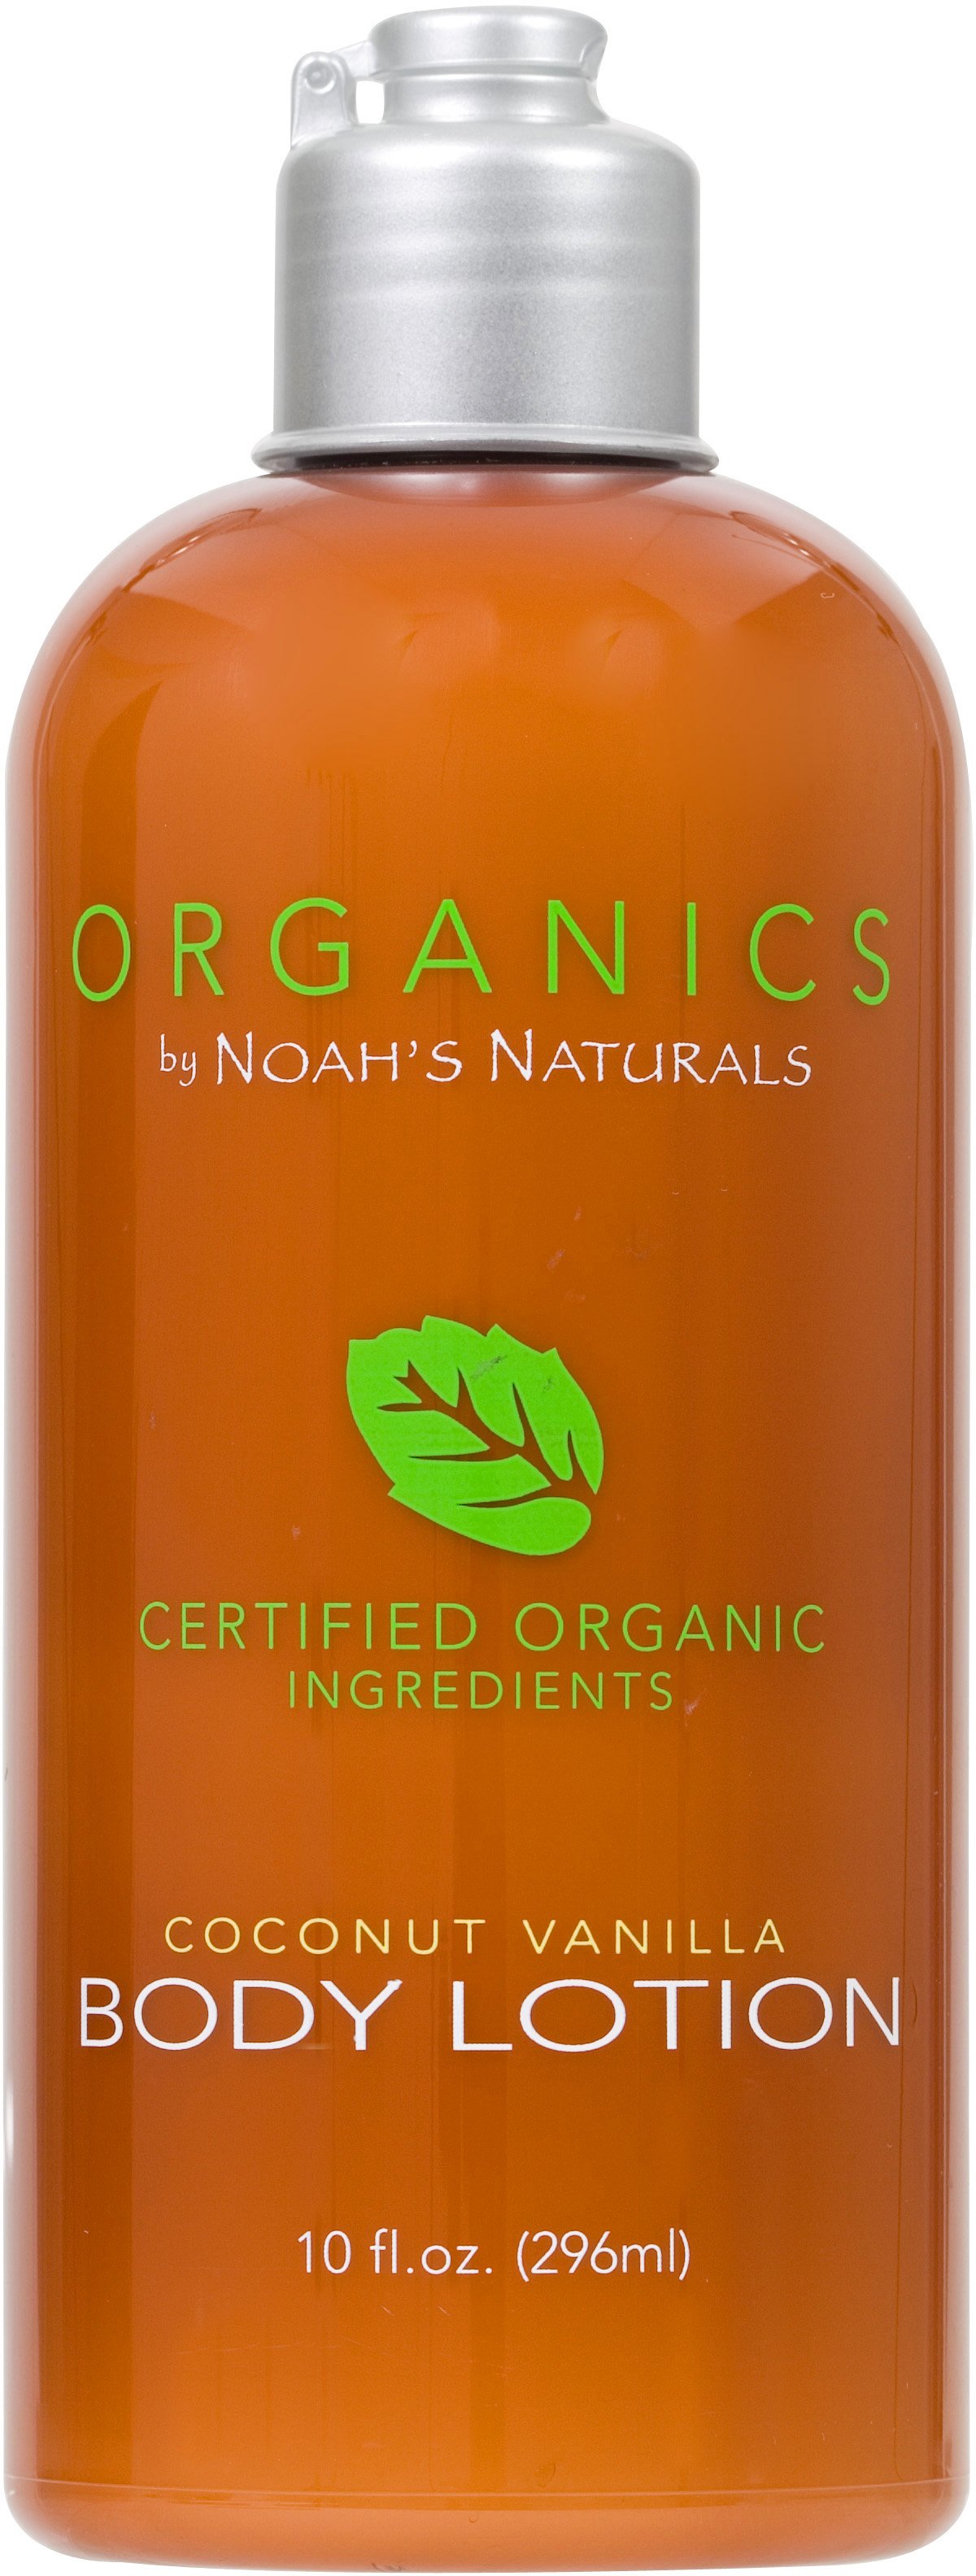 Noah's Naturals Ogranics Coconut Vanilla Body Lotion